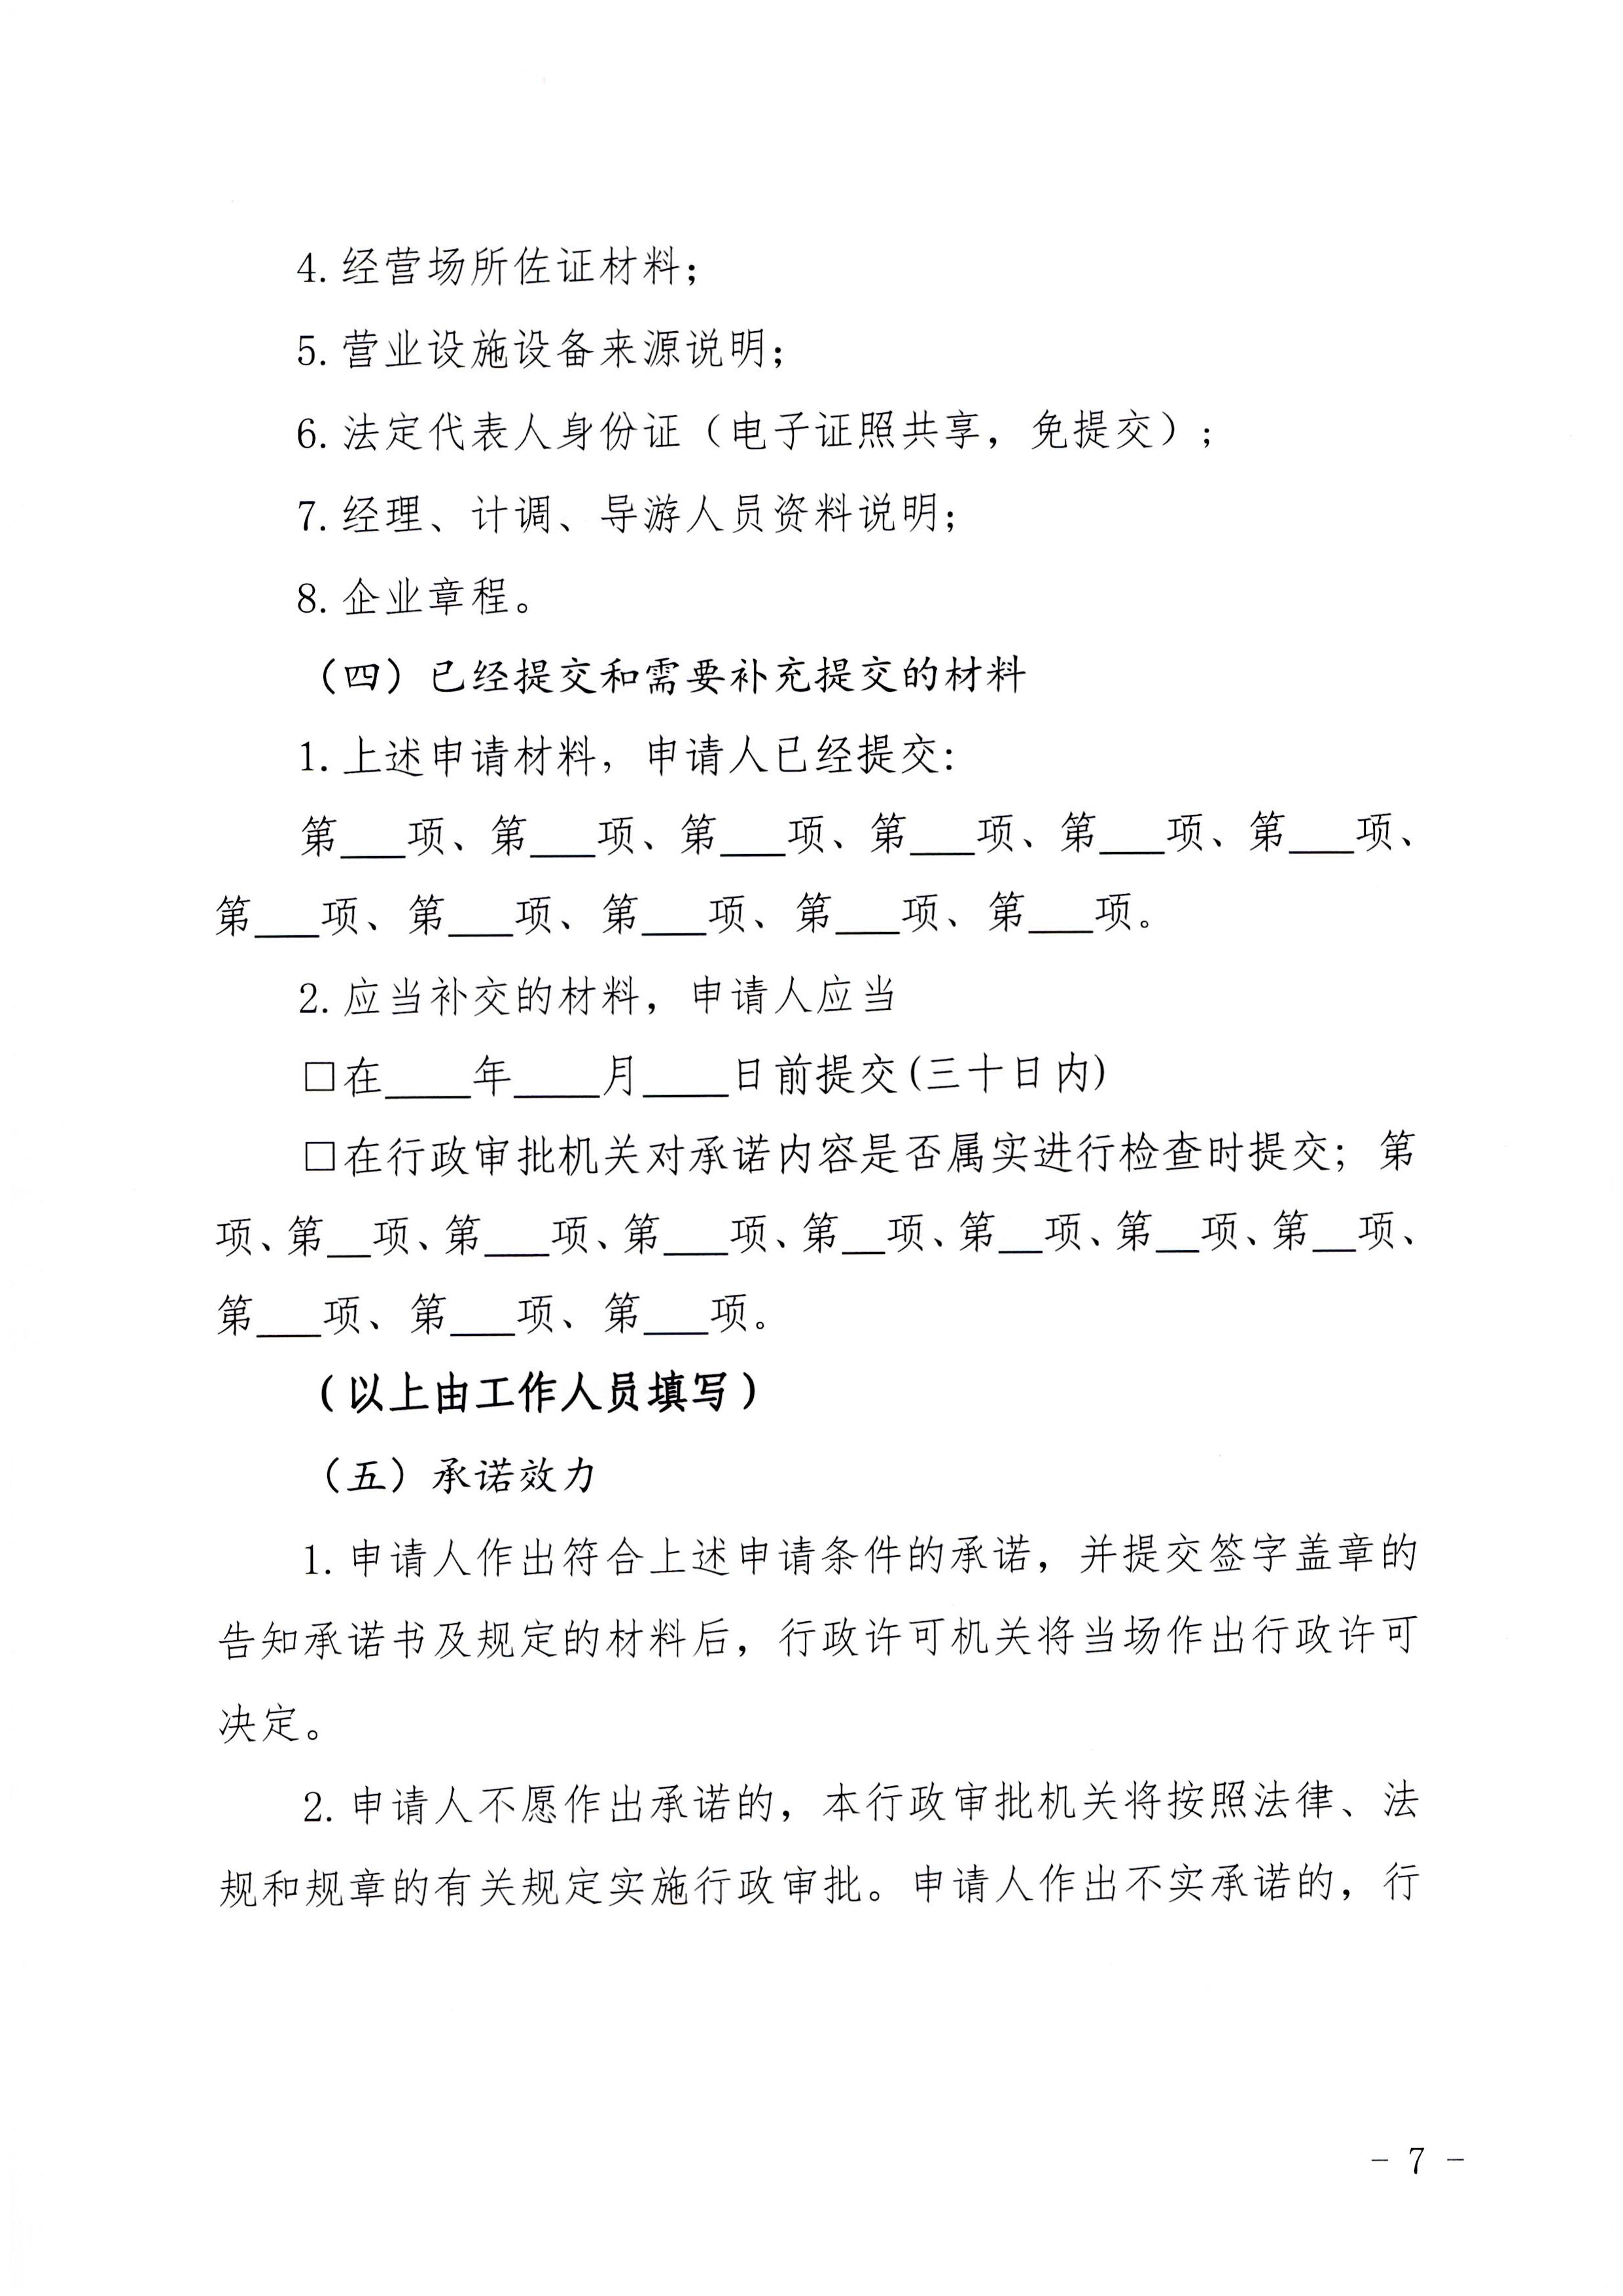 广东省文化和旅游厅印发证照分离改革实施方案的通知_页面_43.jpg